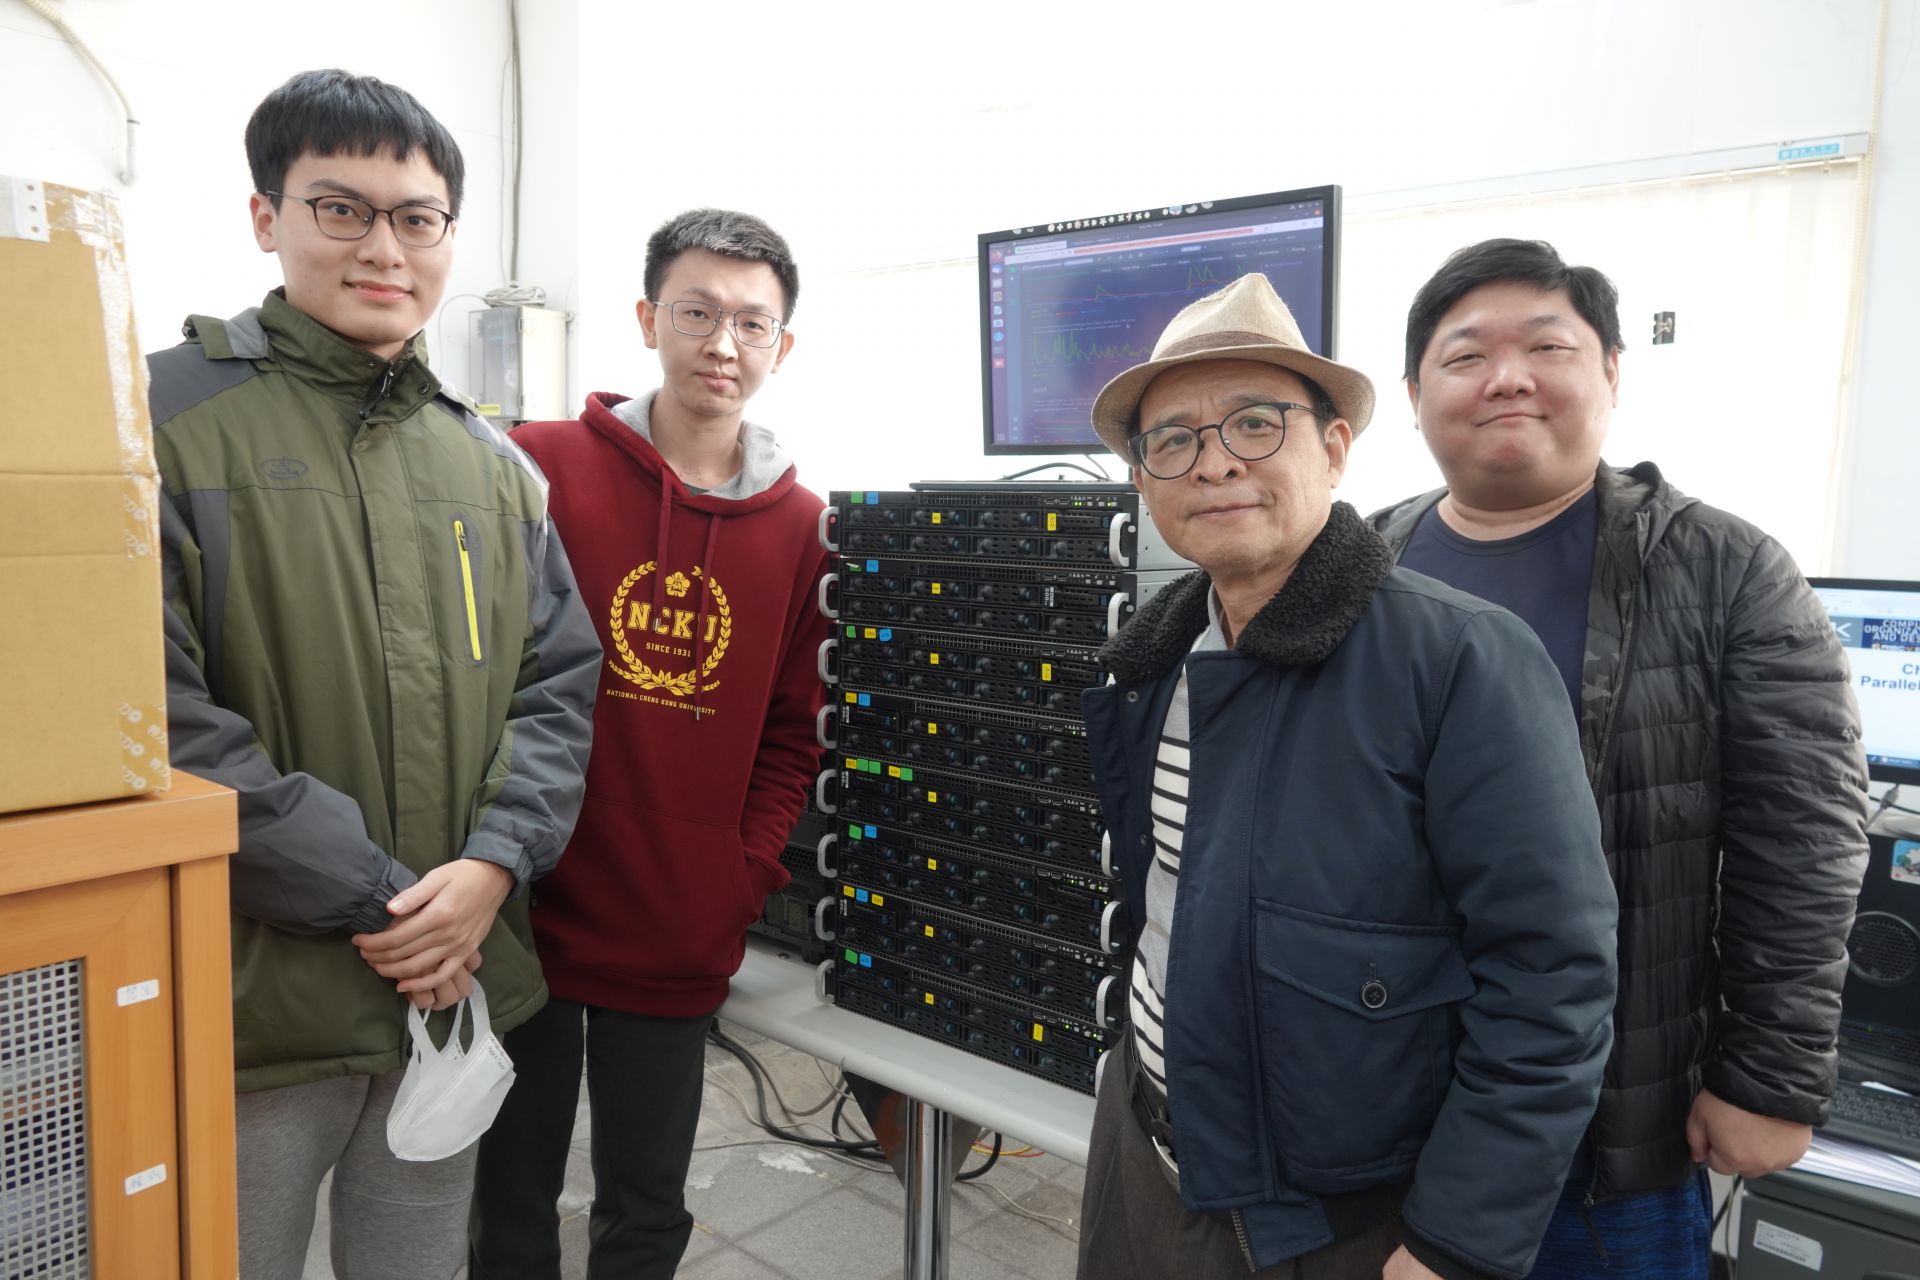 創建台灣新護國神山產業　成大團隊研發新一代網路拓樸　超越美中日之超級電腦的技術